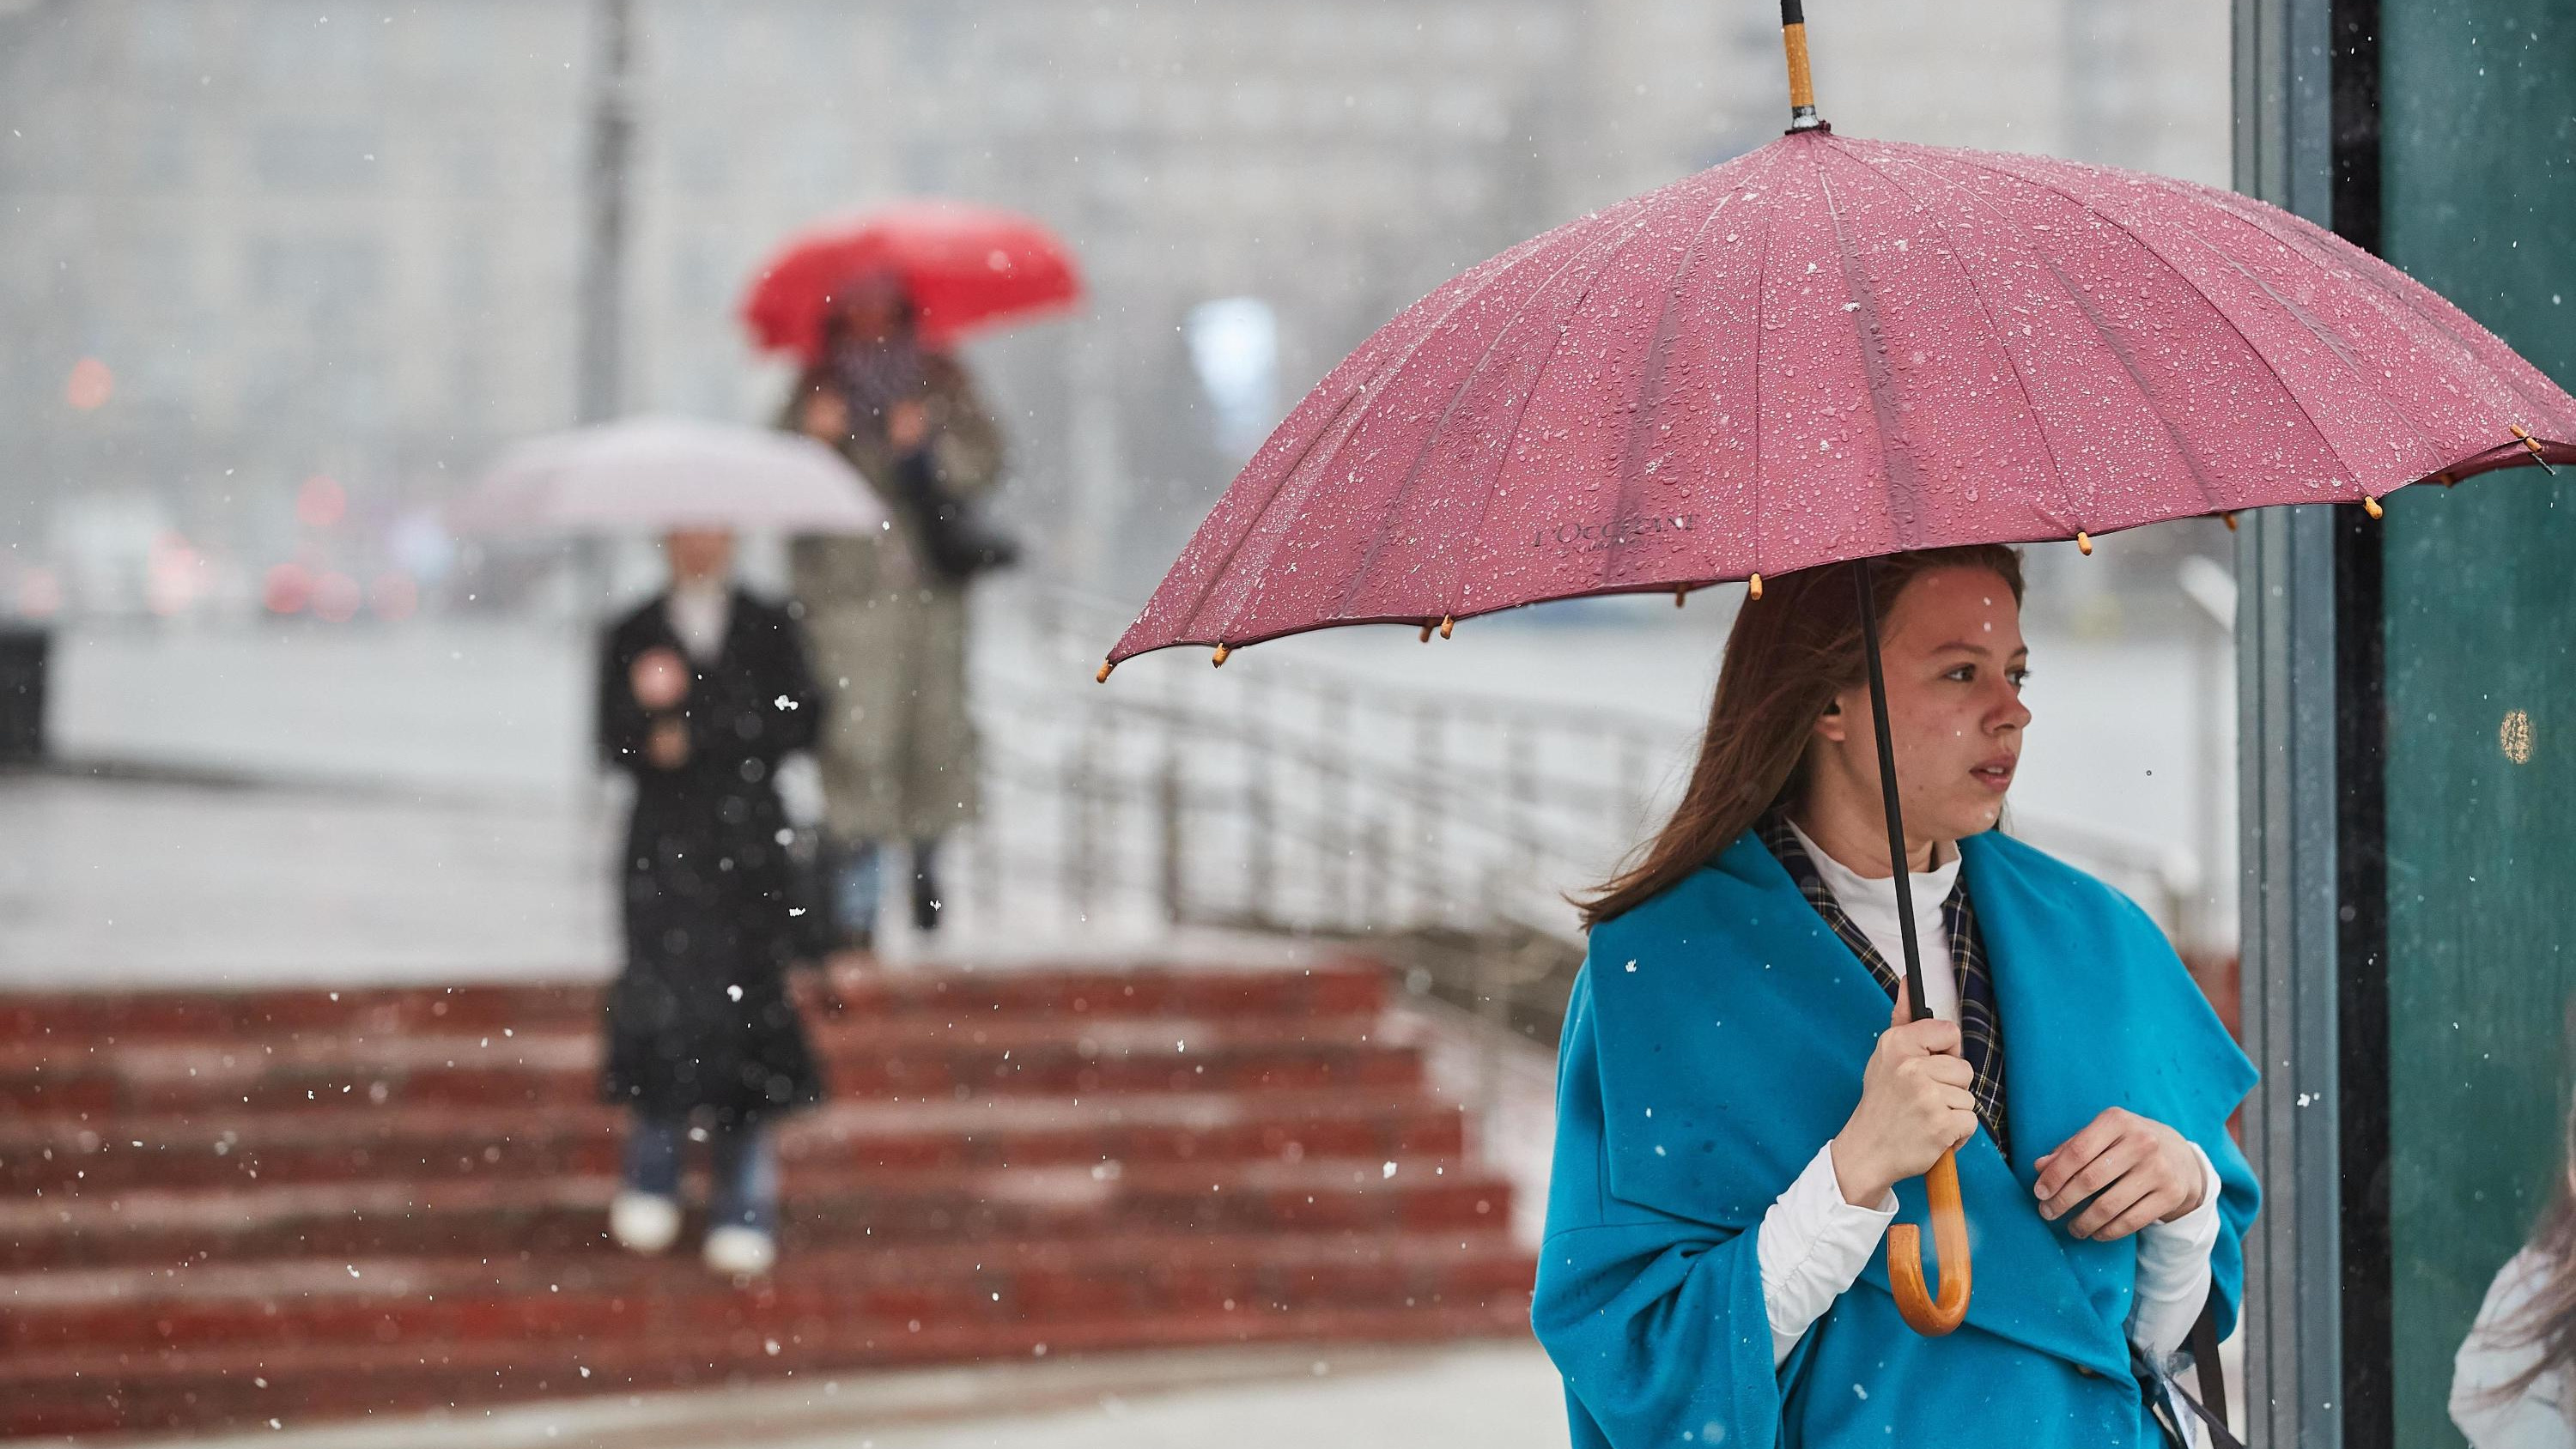 Пасмурно и сыро: какая будет погода на следующей неделе в Новосибирске — прогноз с одним теплым днем